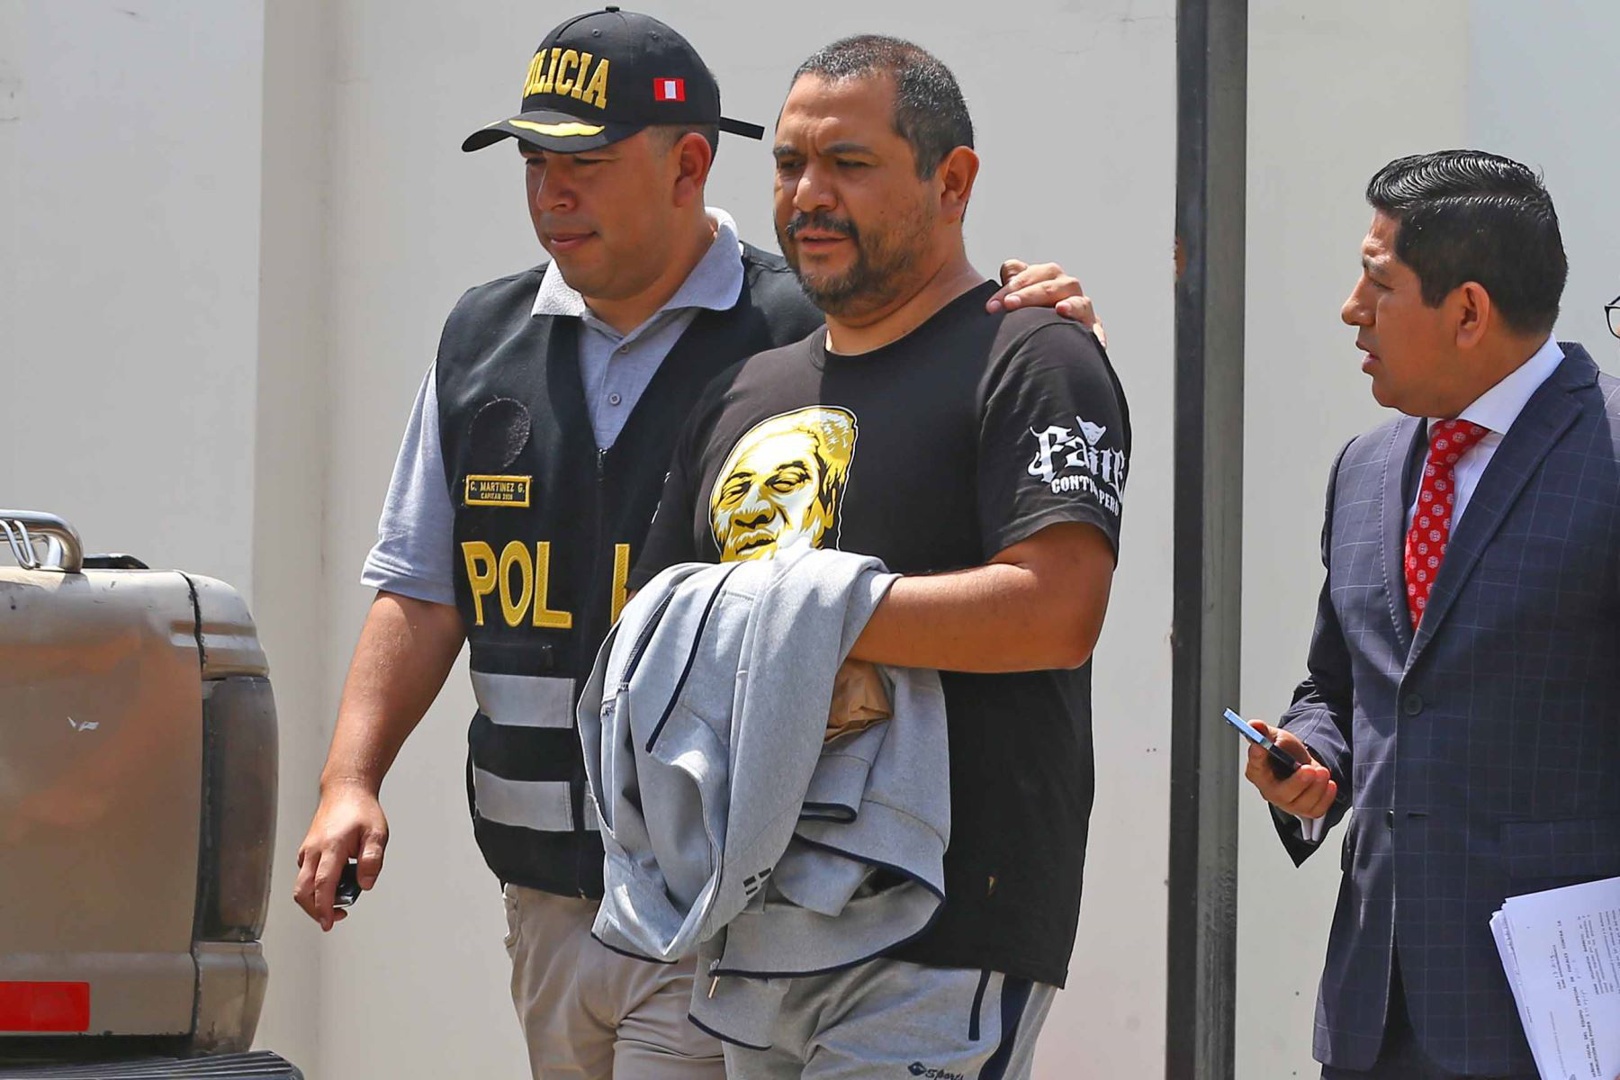 asesor de la fiscal general de perú detenido por corrupción promete colaborar con justicia